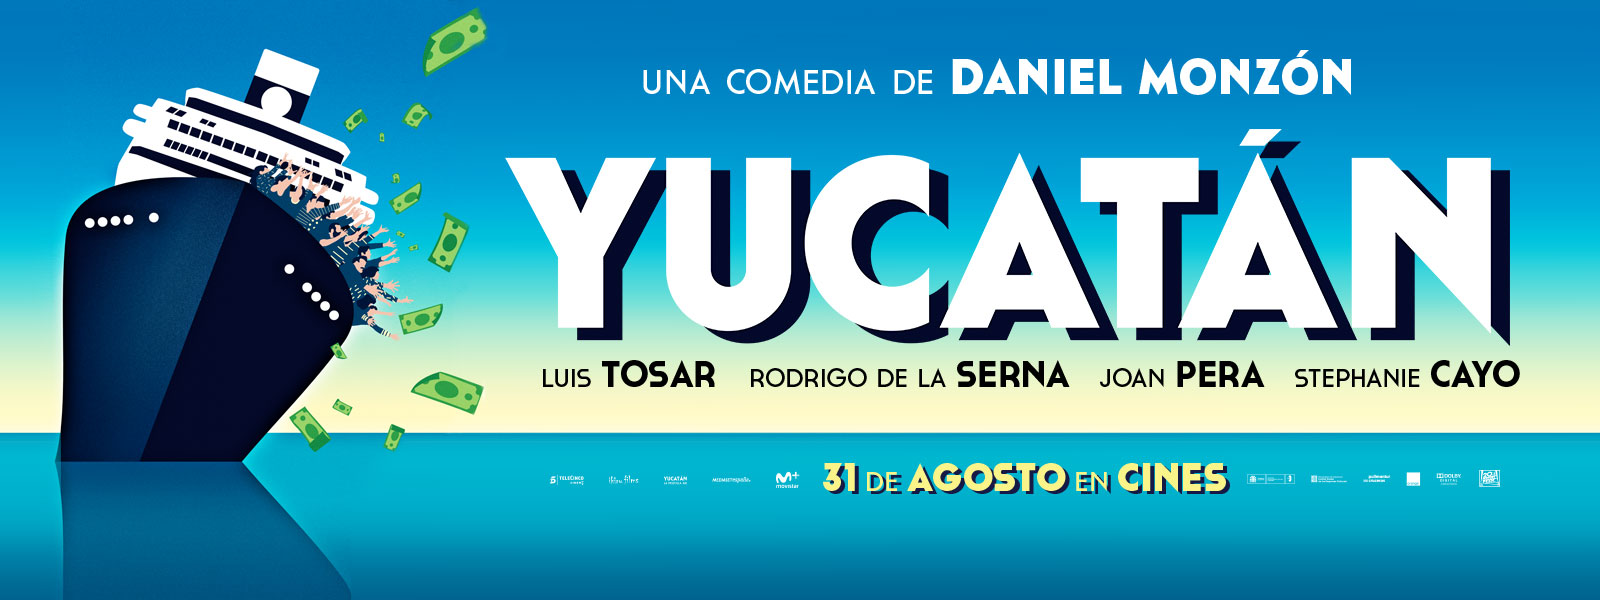 Yucatán en Cantones Cines de A Coruña